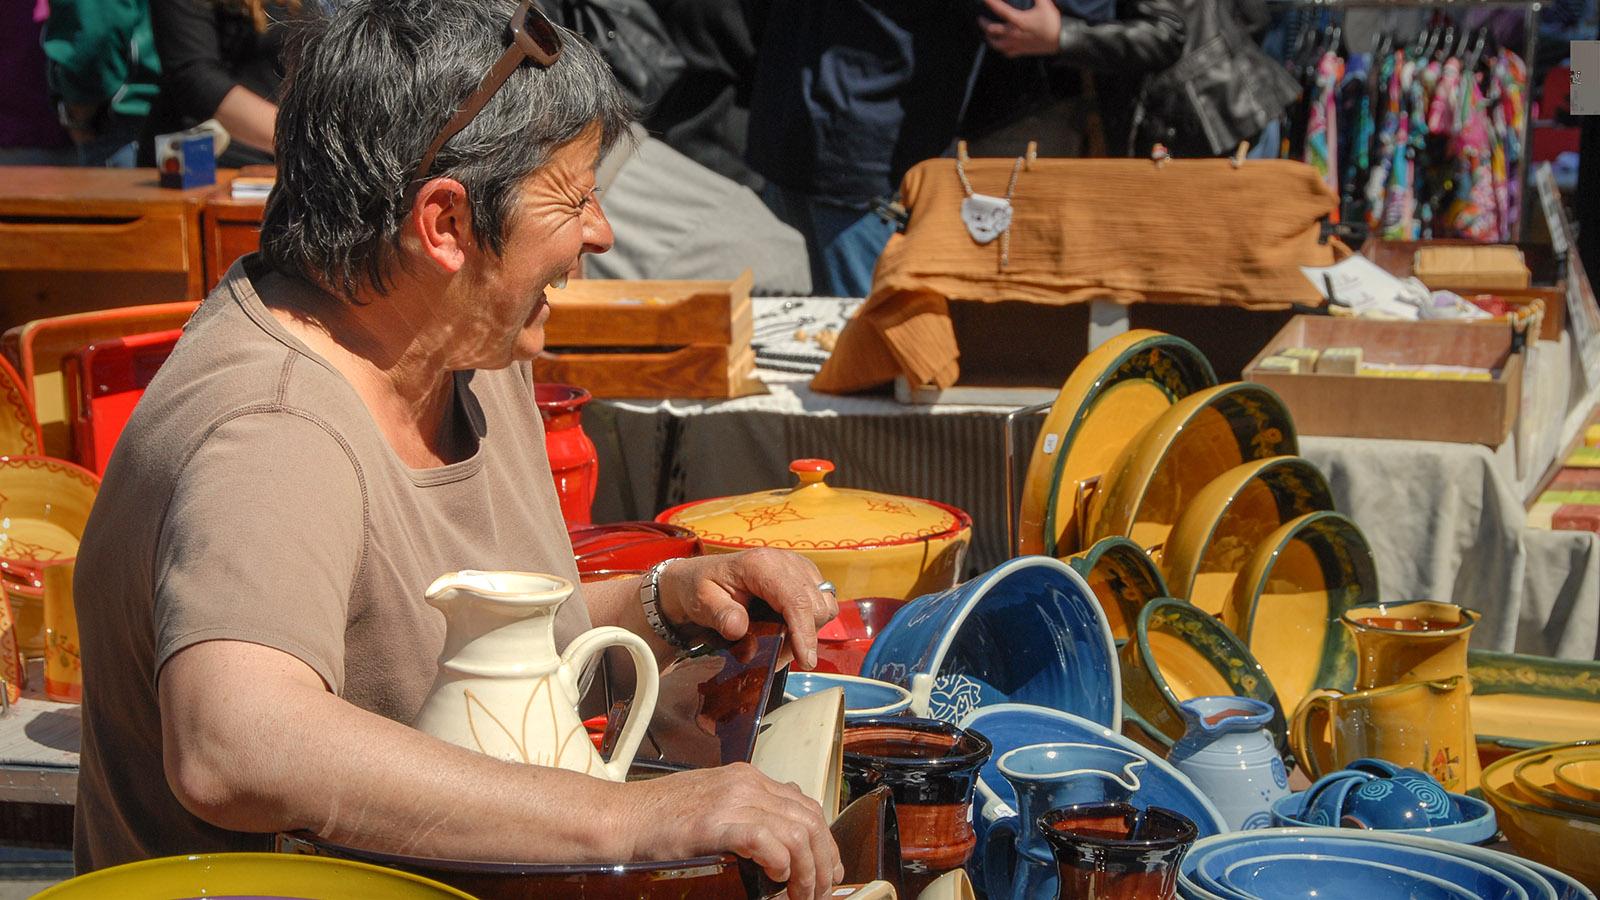 Bunte Keramik – sie gehört auch zu vielen Wochenmärkten dazu. Foto: Hilke Maunder